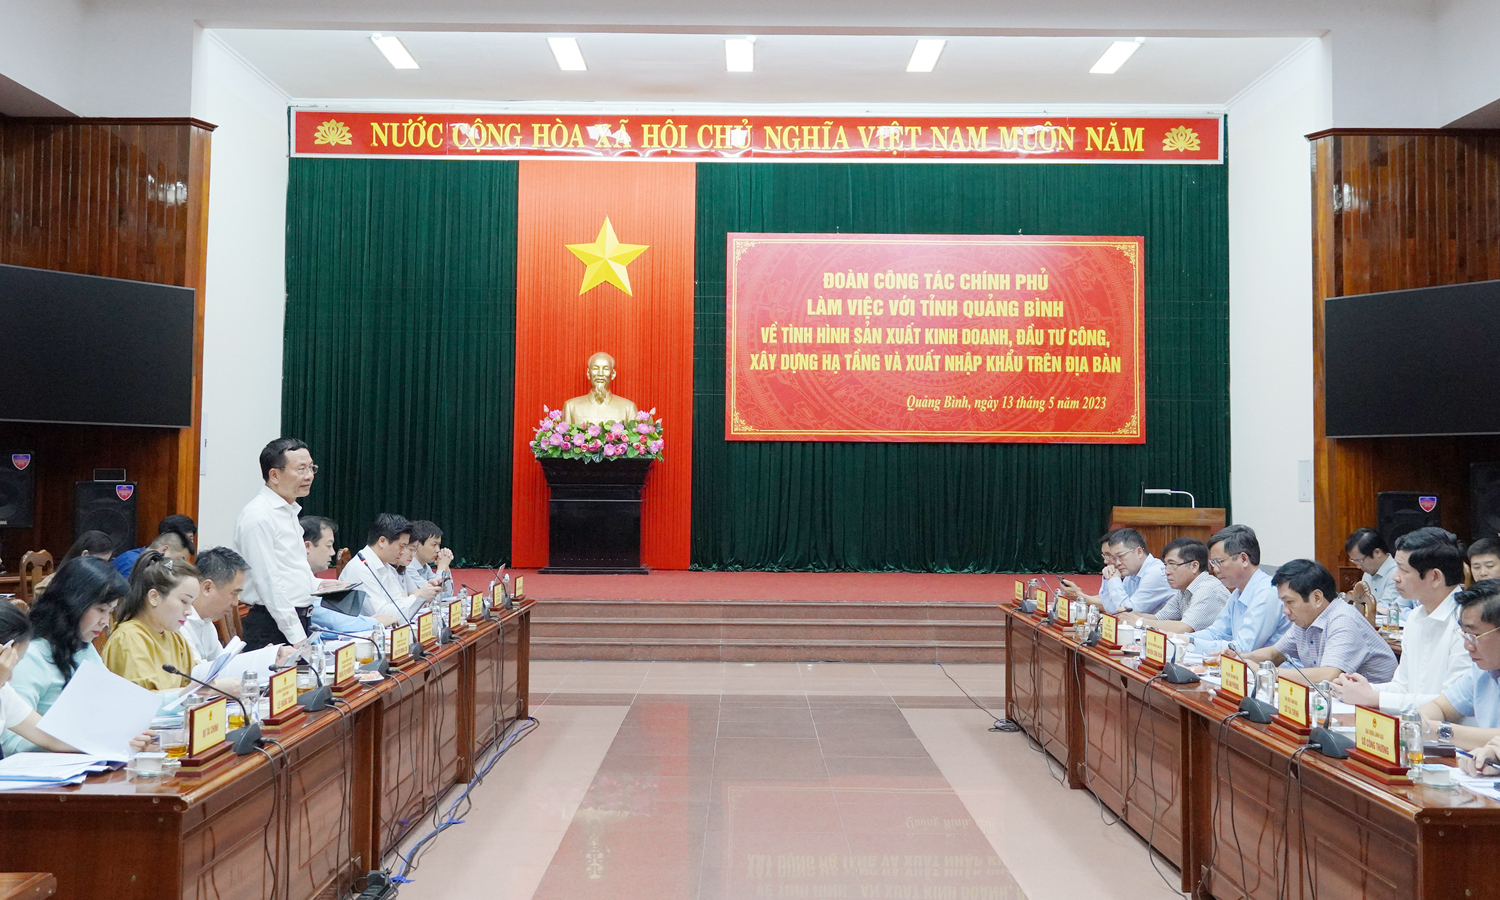 Đoàn công tác của Chính phủ làm việc với lãnh đạo tỉnh Quảng Bình